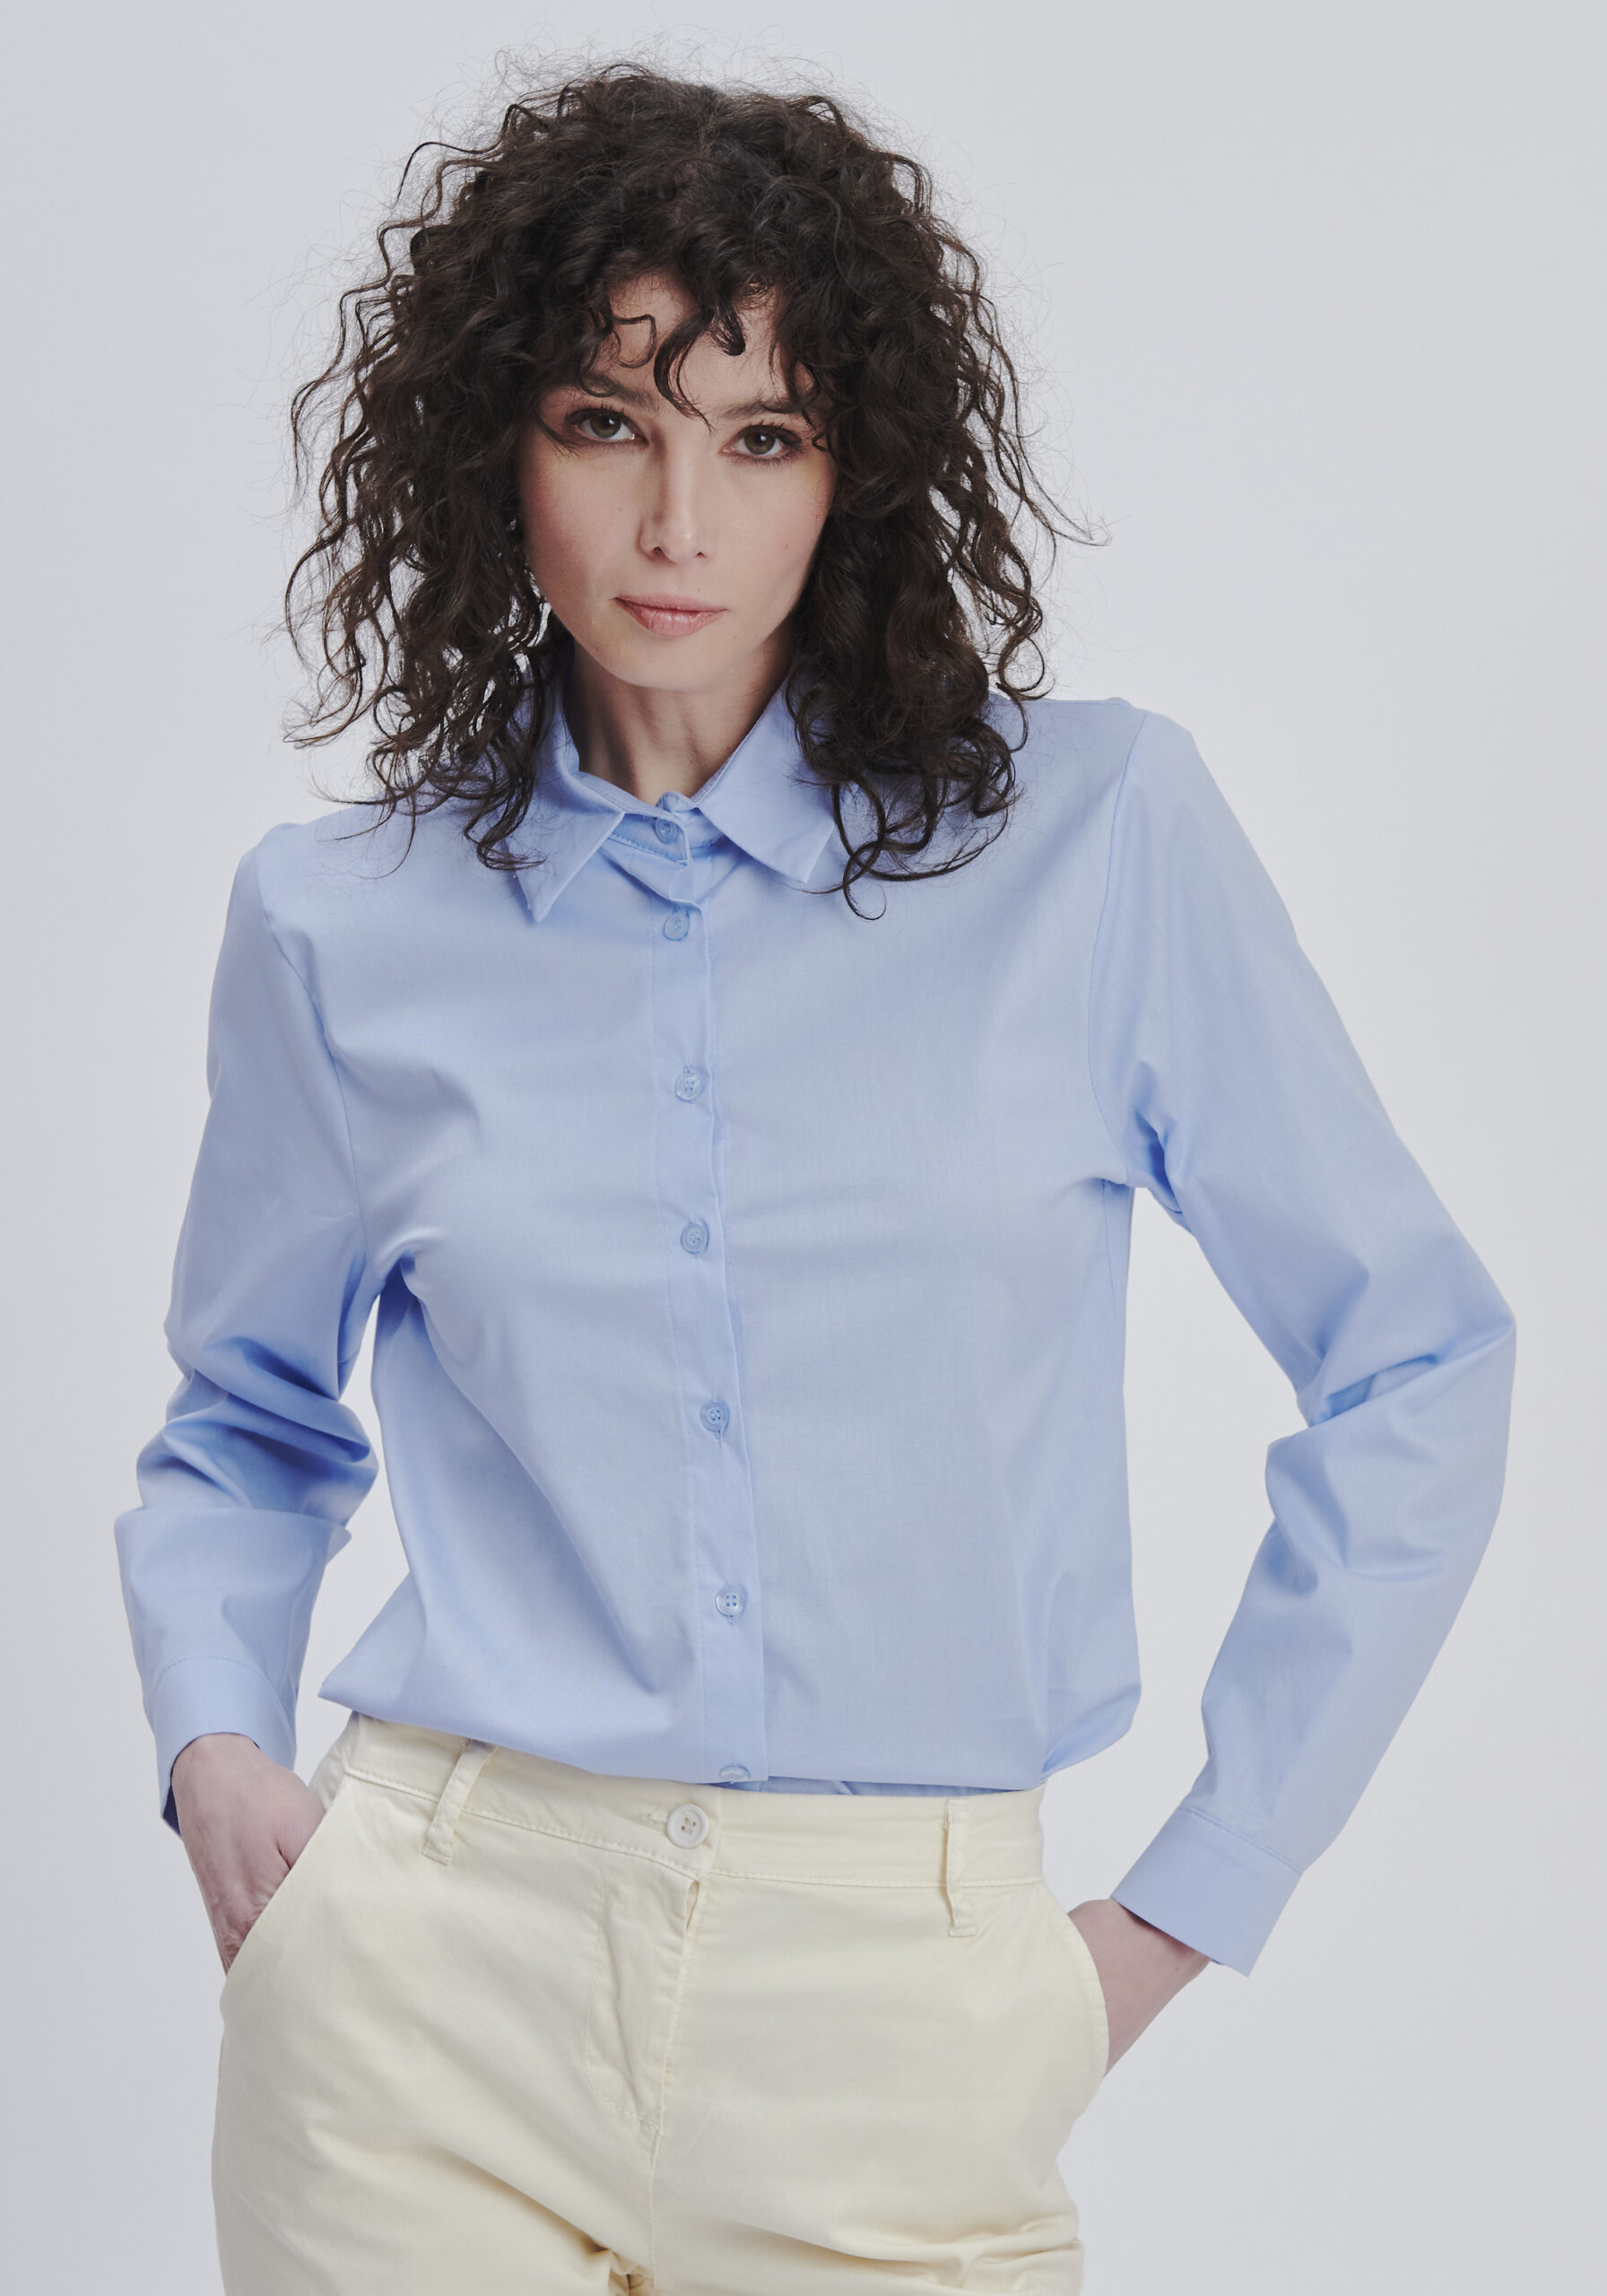 Camicie & Bluse Donna: Eleganza e Stile per Ogni Occasione